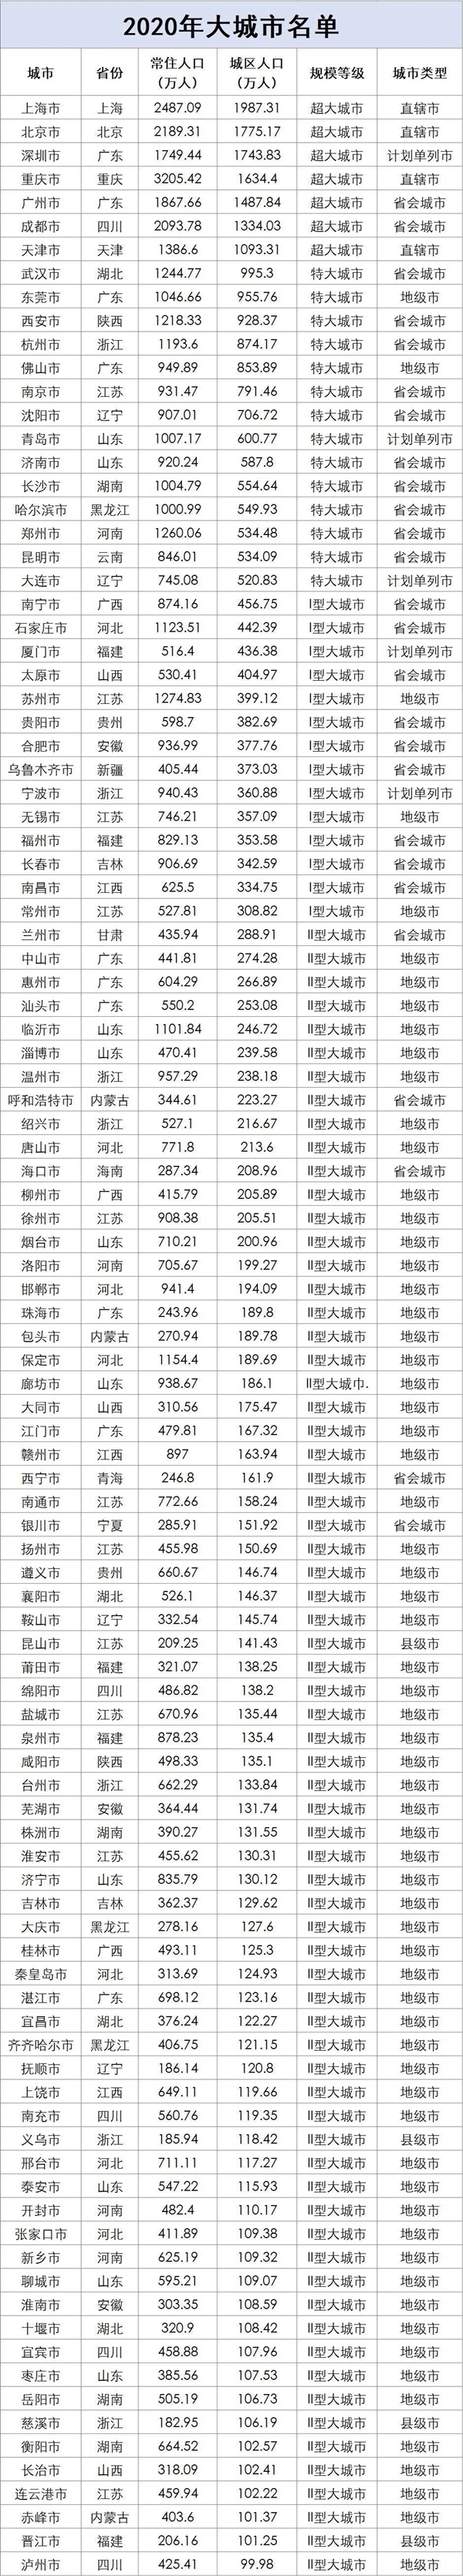 百座大城市名单首公布 江苏、山东和广东位列前三